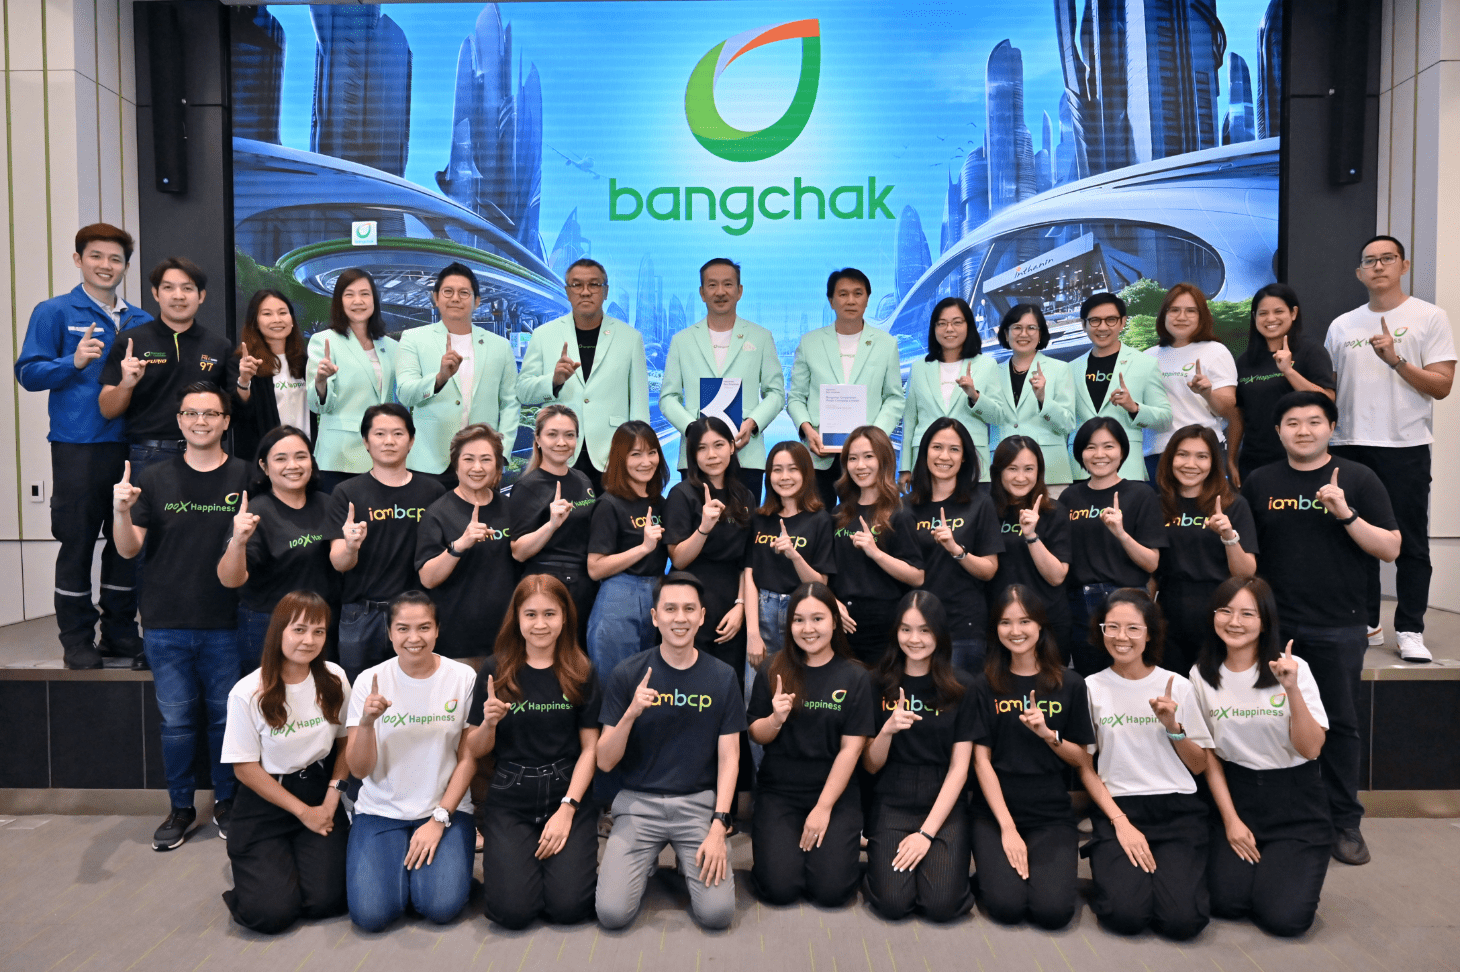 “บ้านบางจาก” พื้นที่ที่มุ่งมั่นสร้างสรรค์ความสุขให้ผู้อยู่อาศัย   สุดยอดนายจ้างดีเด่น Best Employer แห่งประเทศไทย ปี 2567